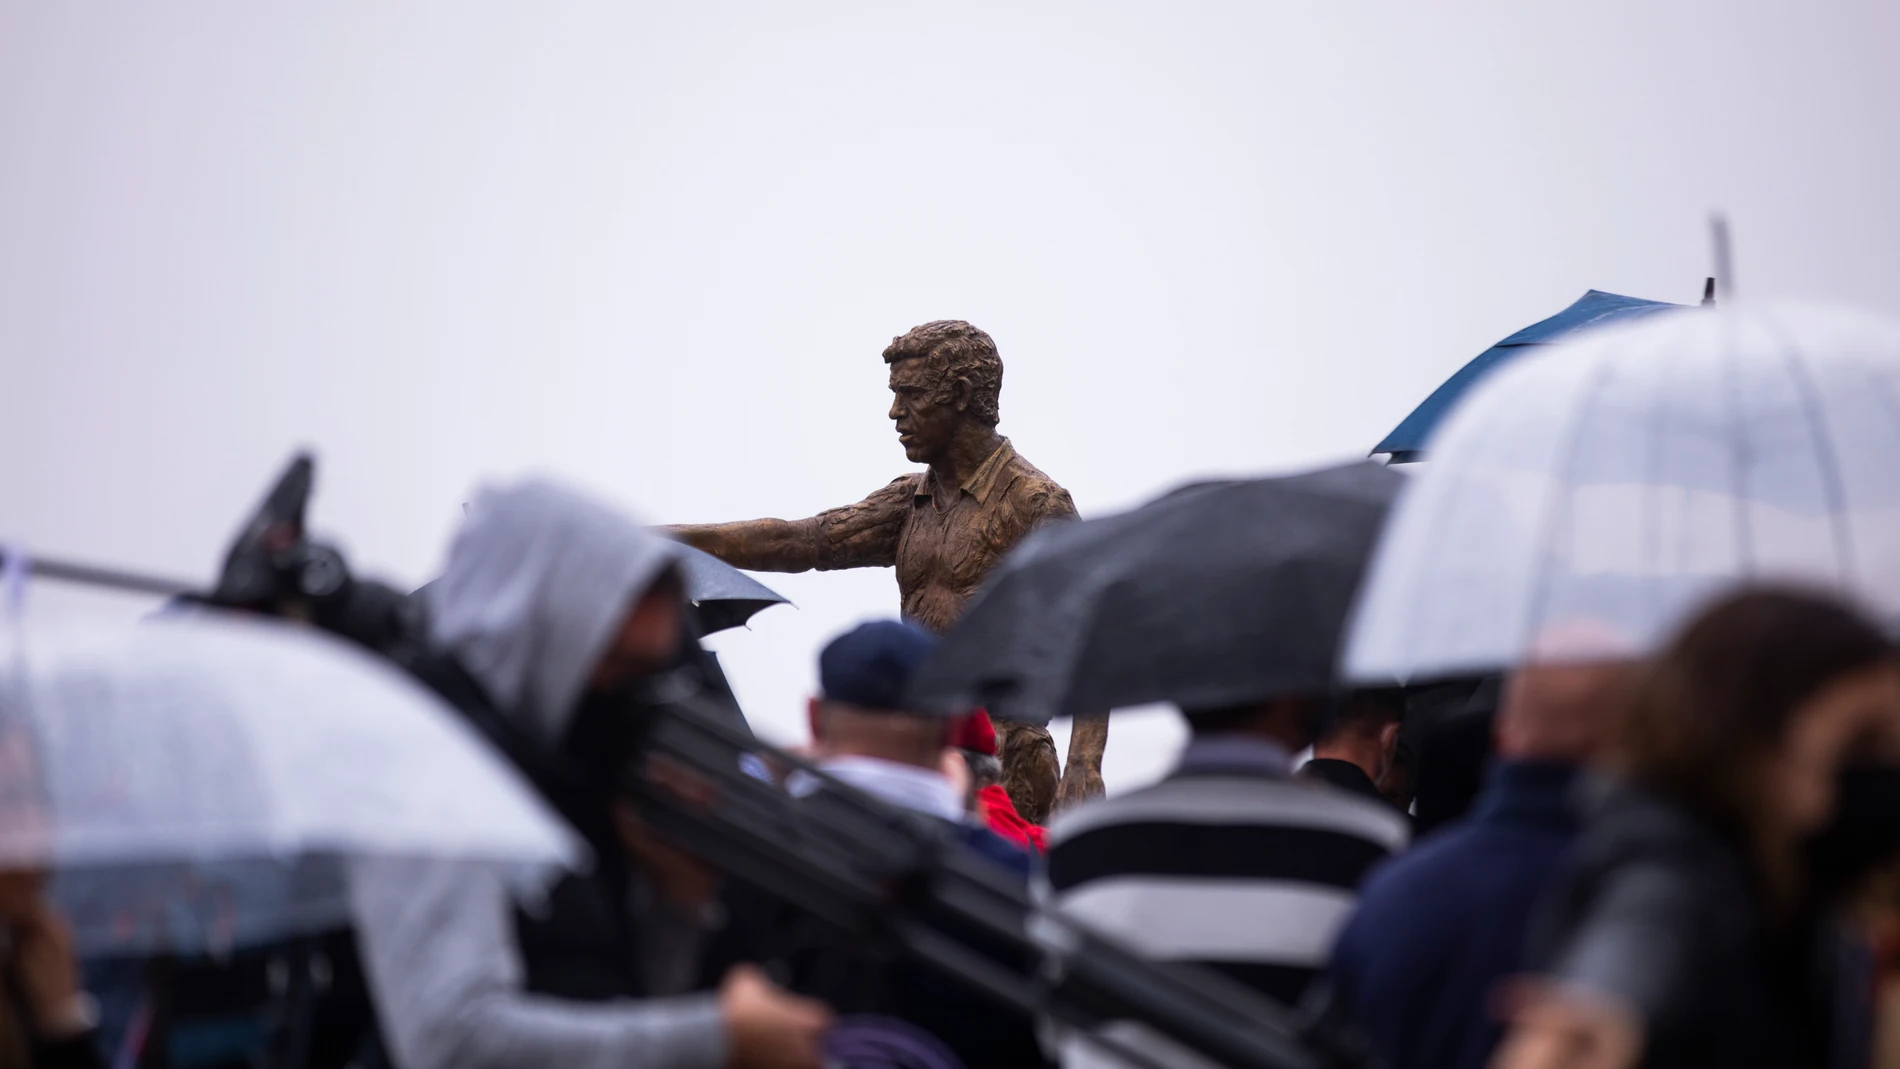 Inauguración de la estatua de Luis Aragones en el Wanda Metropolitano..